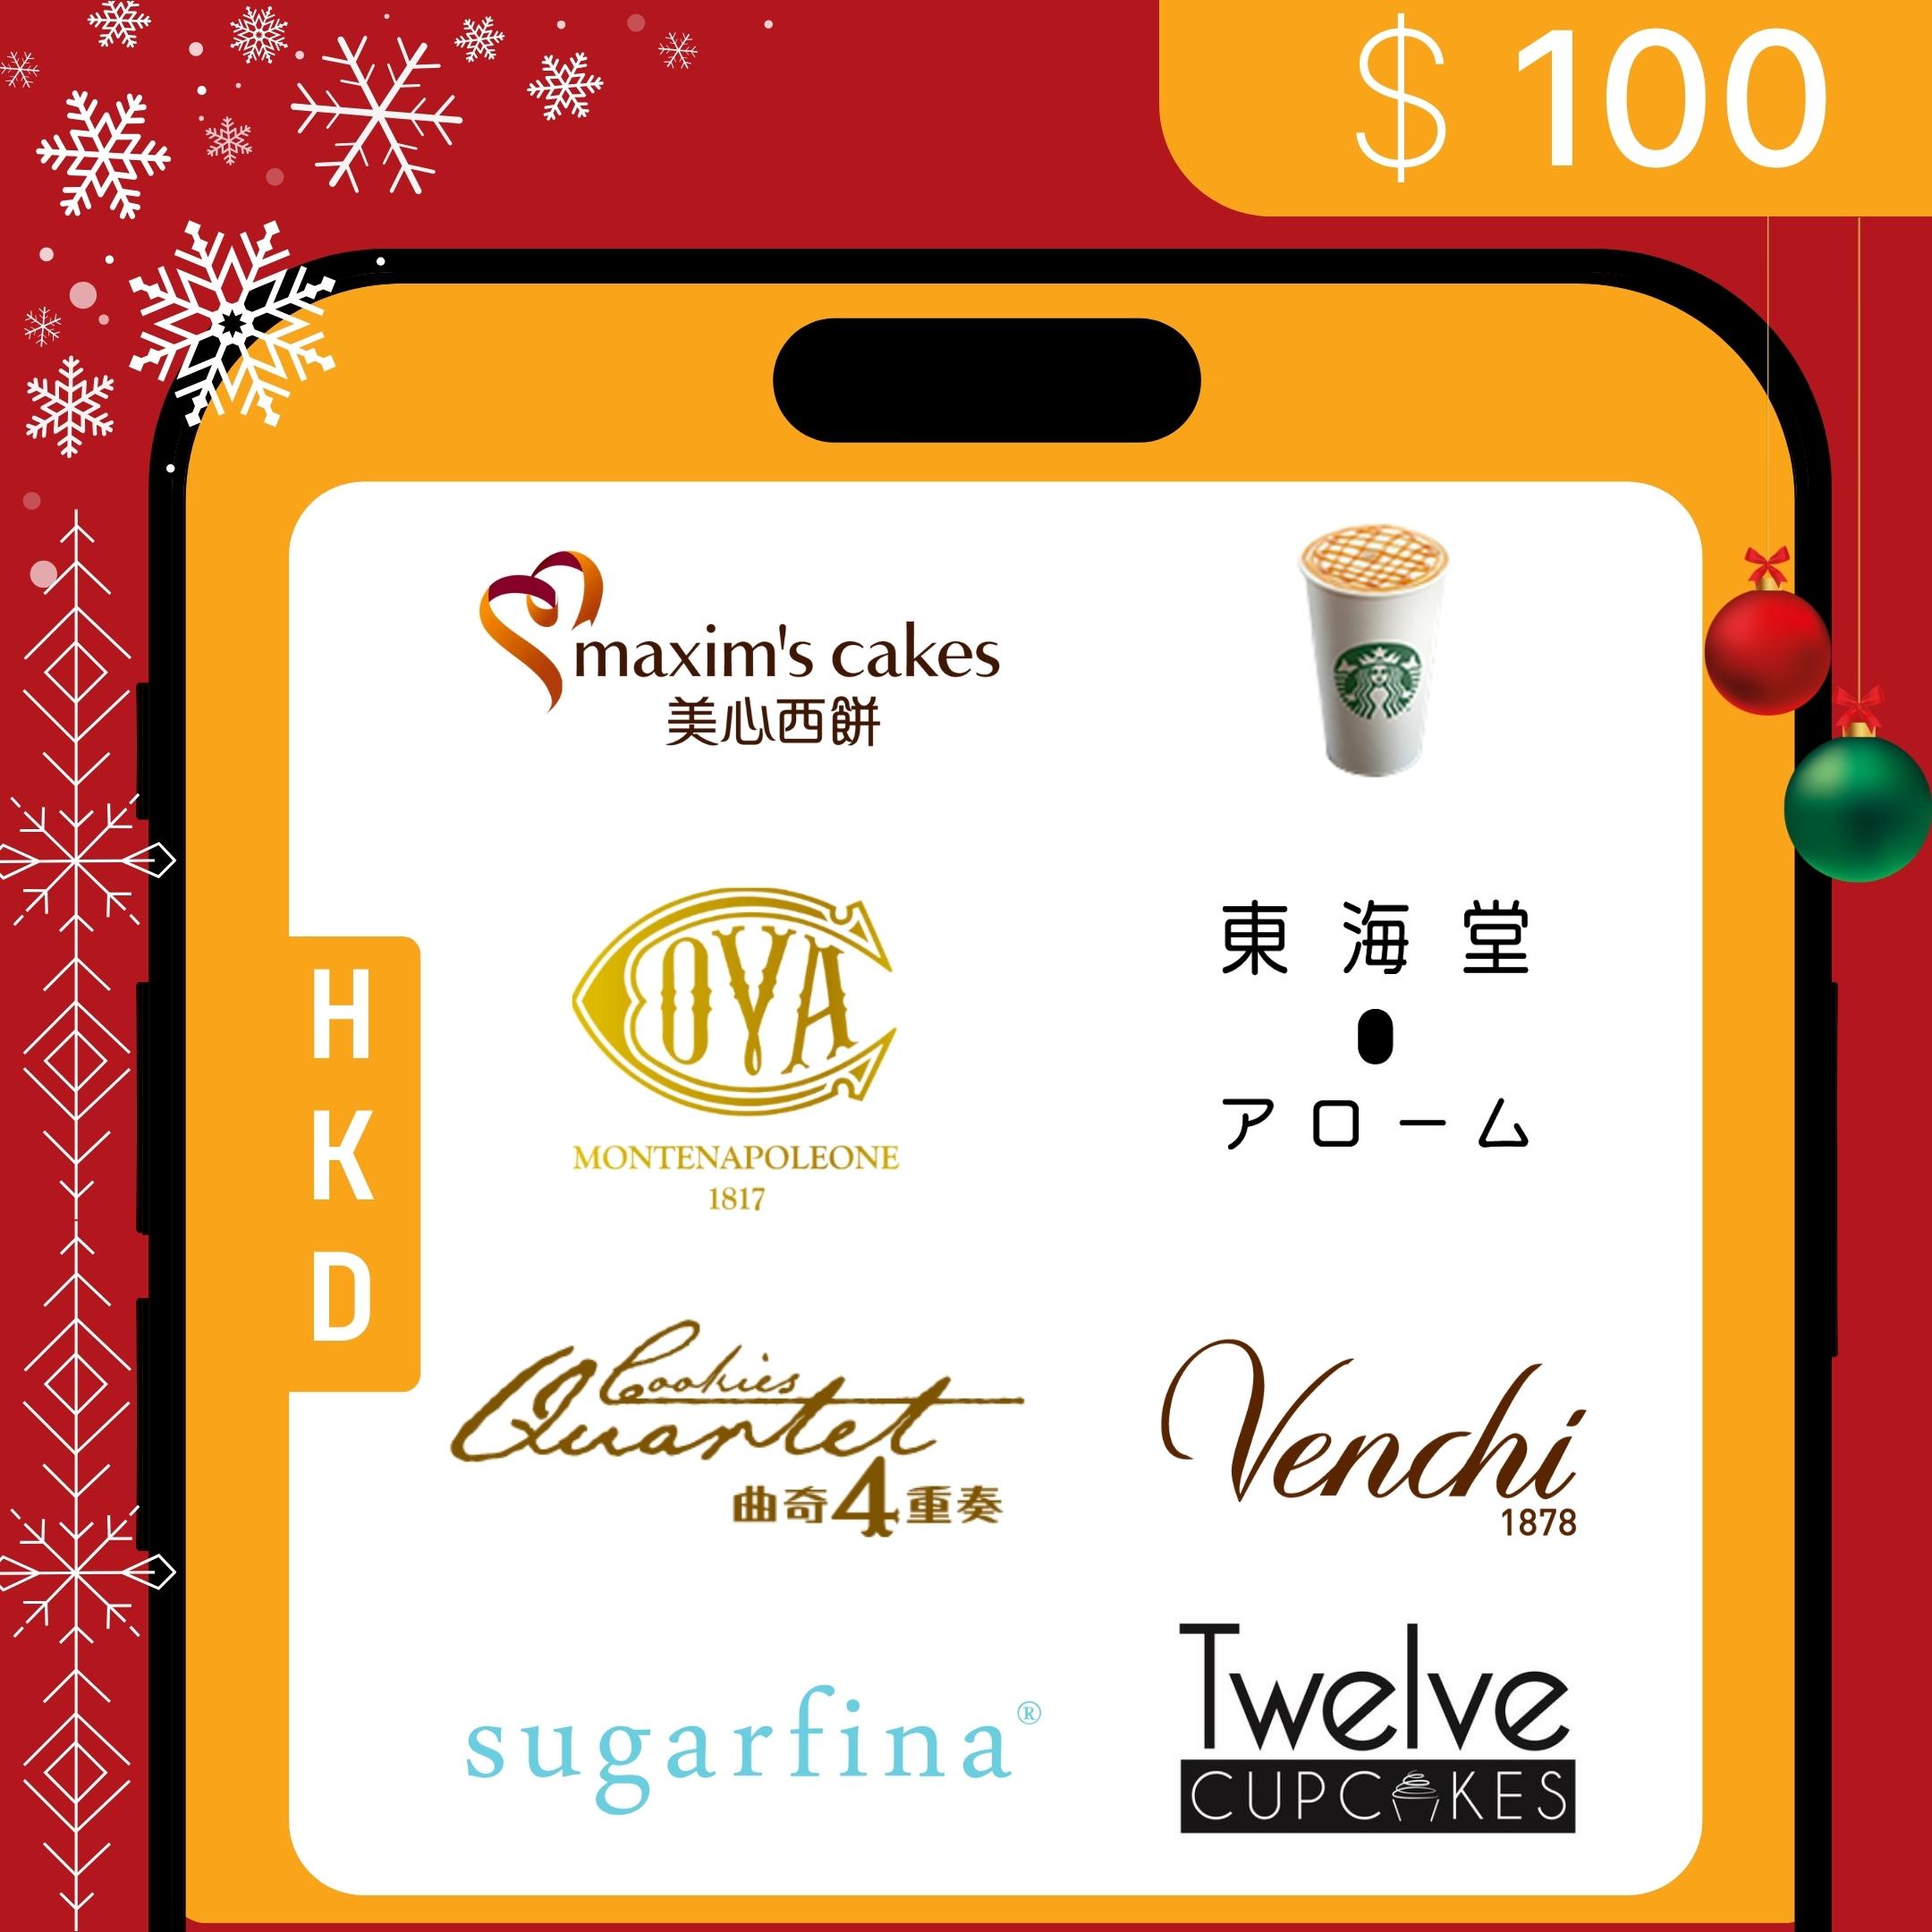 港幣 $100 聖誕電子禮券 | Starbucks, Venchi, COVA HK...